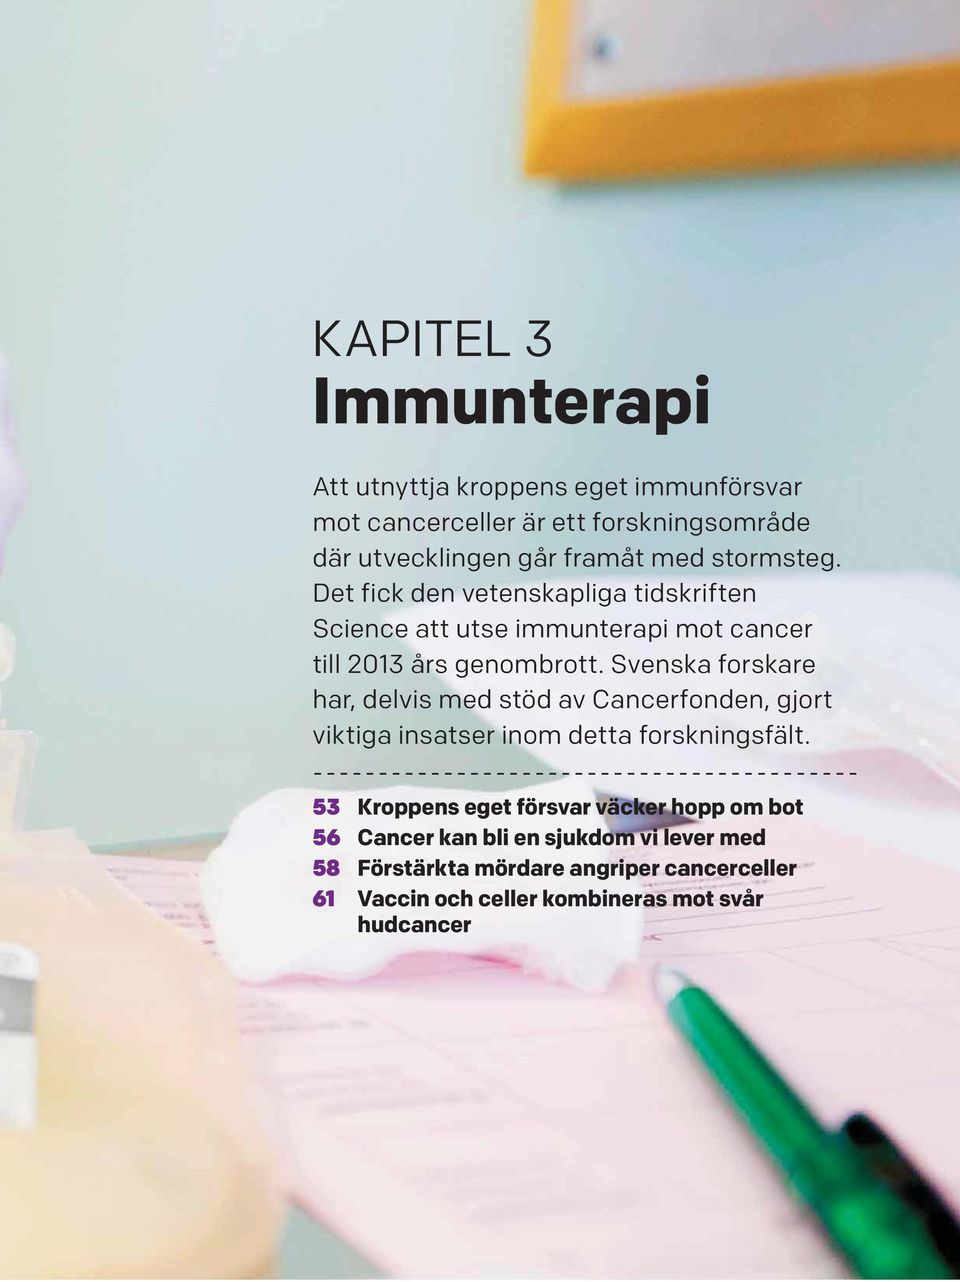 Svenska forskare har, delvis med stöd av Cancerfonden, gjort viktiga insatser inom detta forskningsfält.